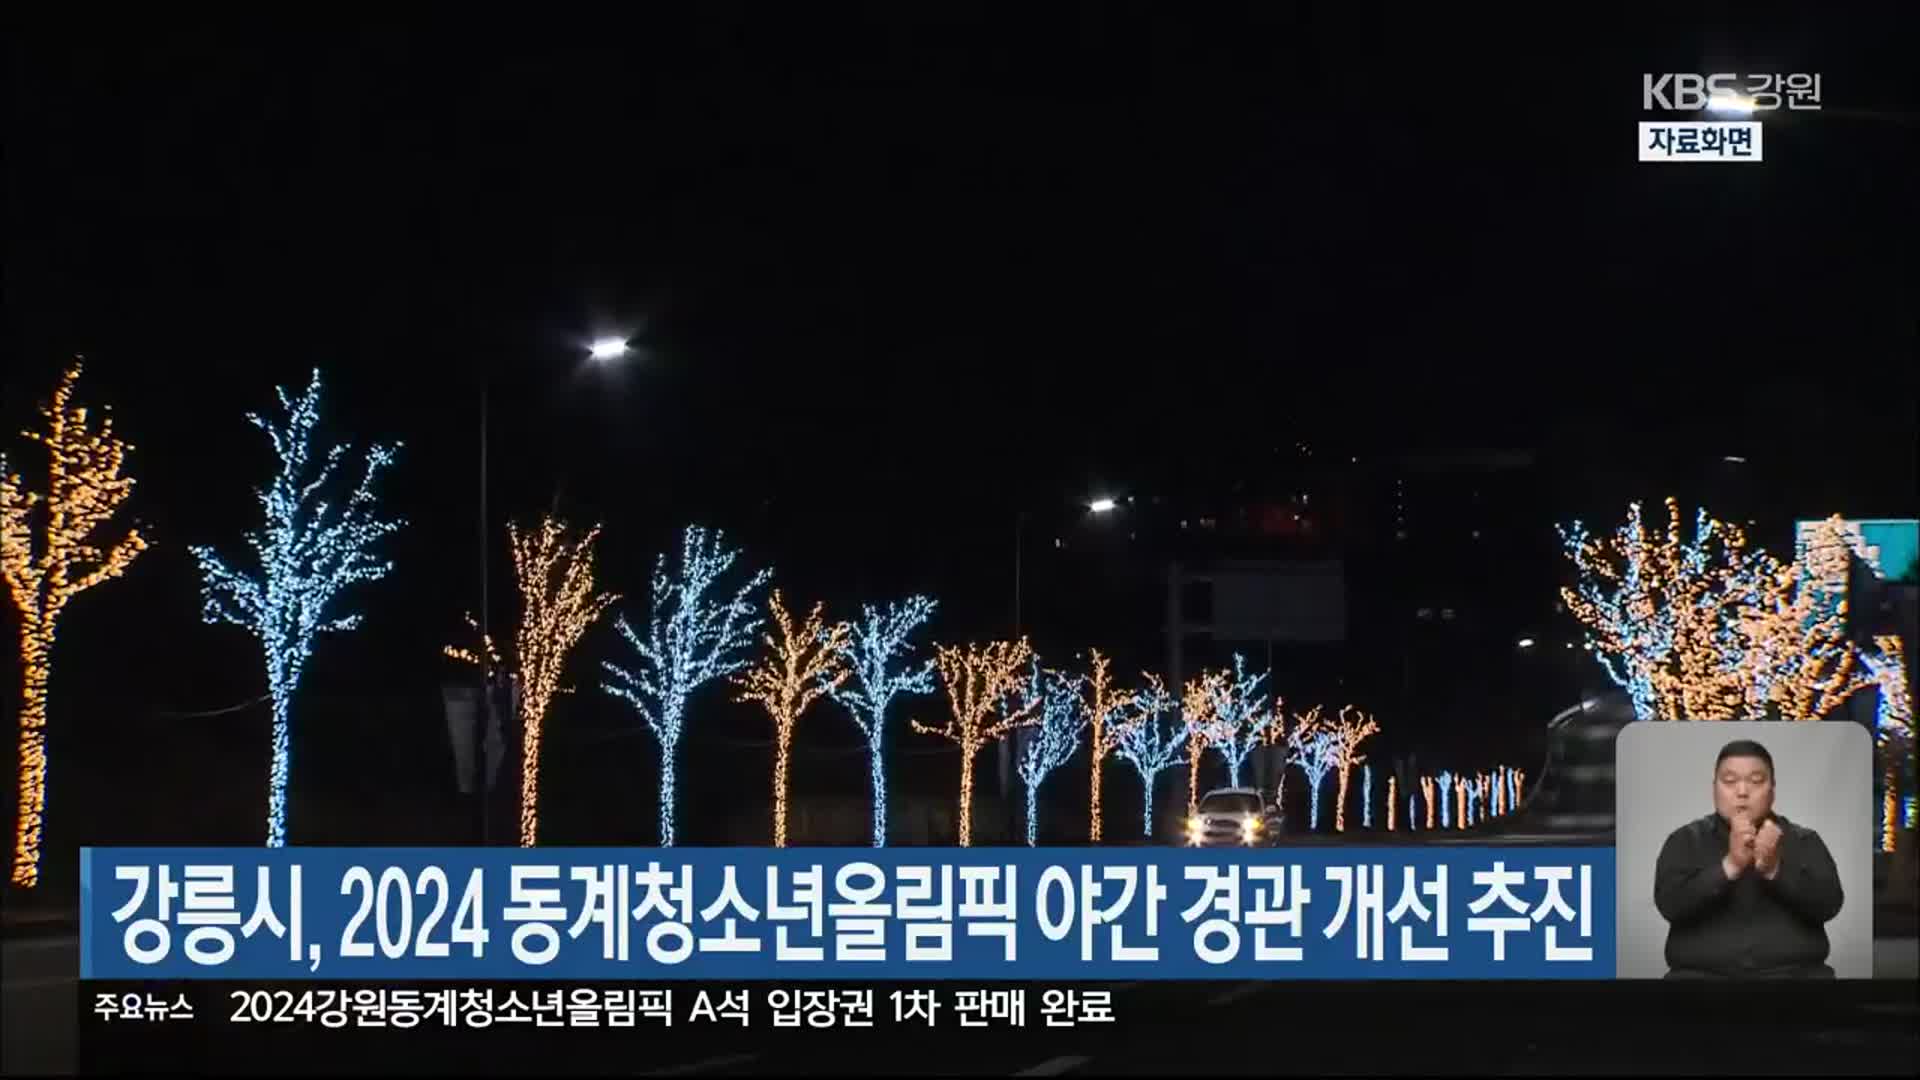 강릉시, 2024 동계청소년올림픽 야간 경관 개선 추진